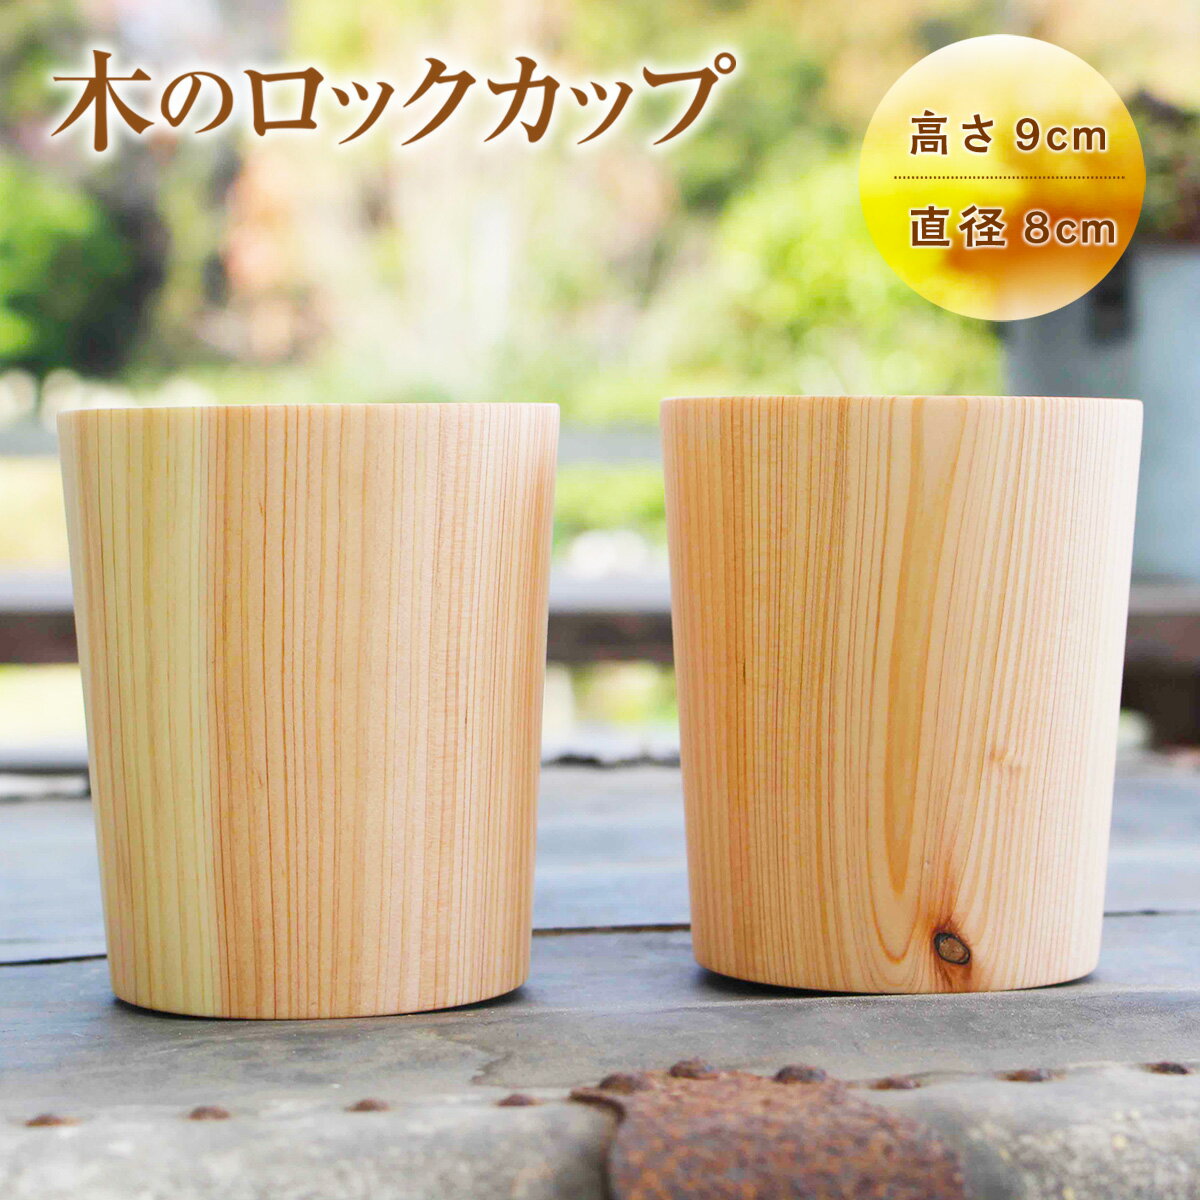 木のロックカップ 2つSet 送料無料 ハンドメイド 手作り コップ カップ 木製 檜 インテリア オブジェ 置き物 シンプル おしゃれ